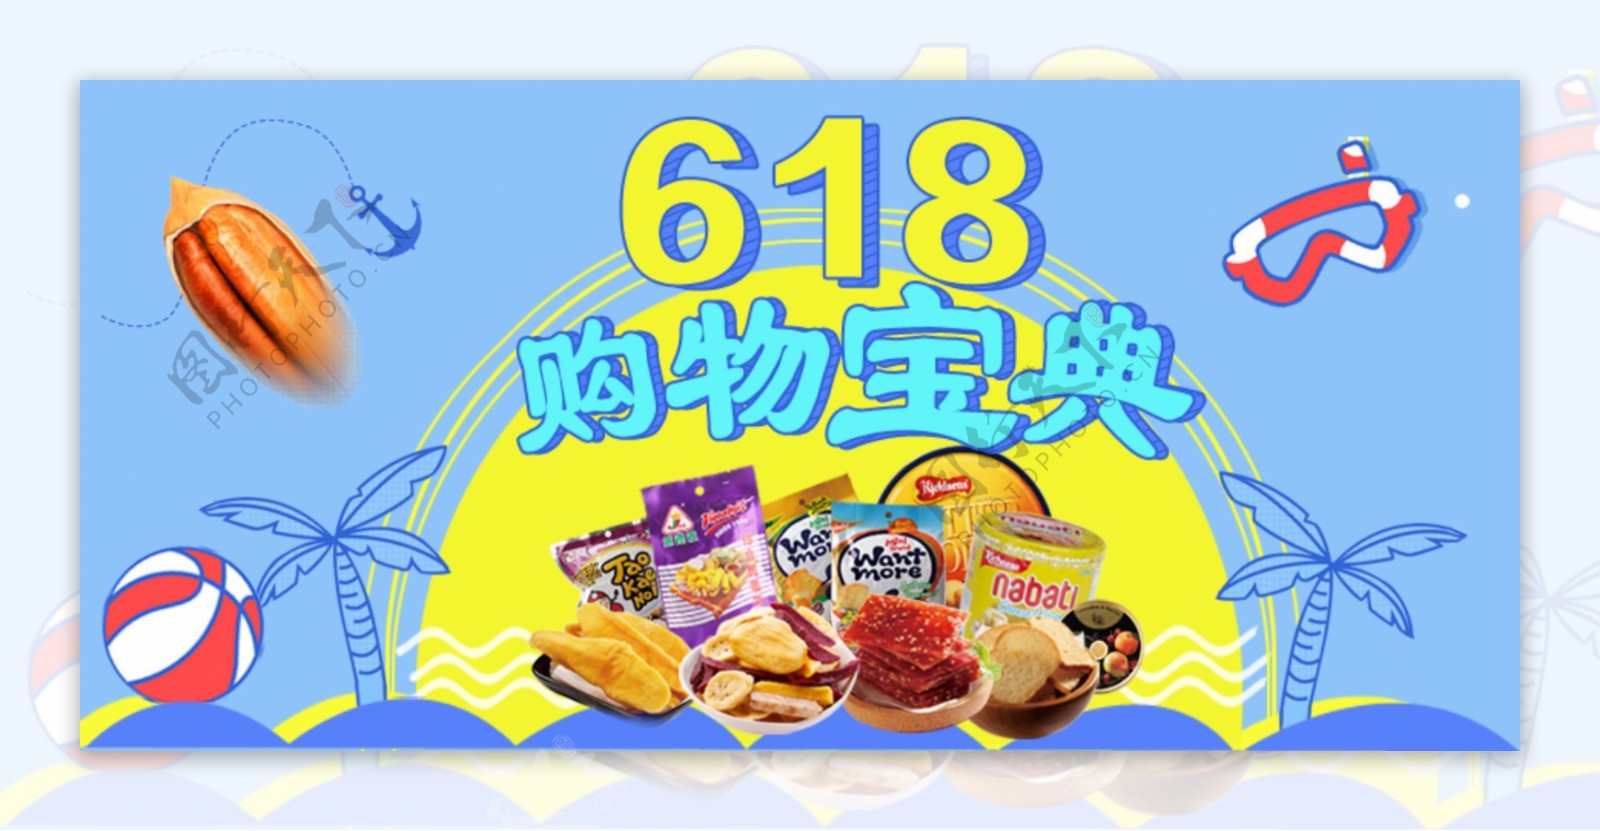 618促销活动蓝色夏日风情休闲零食